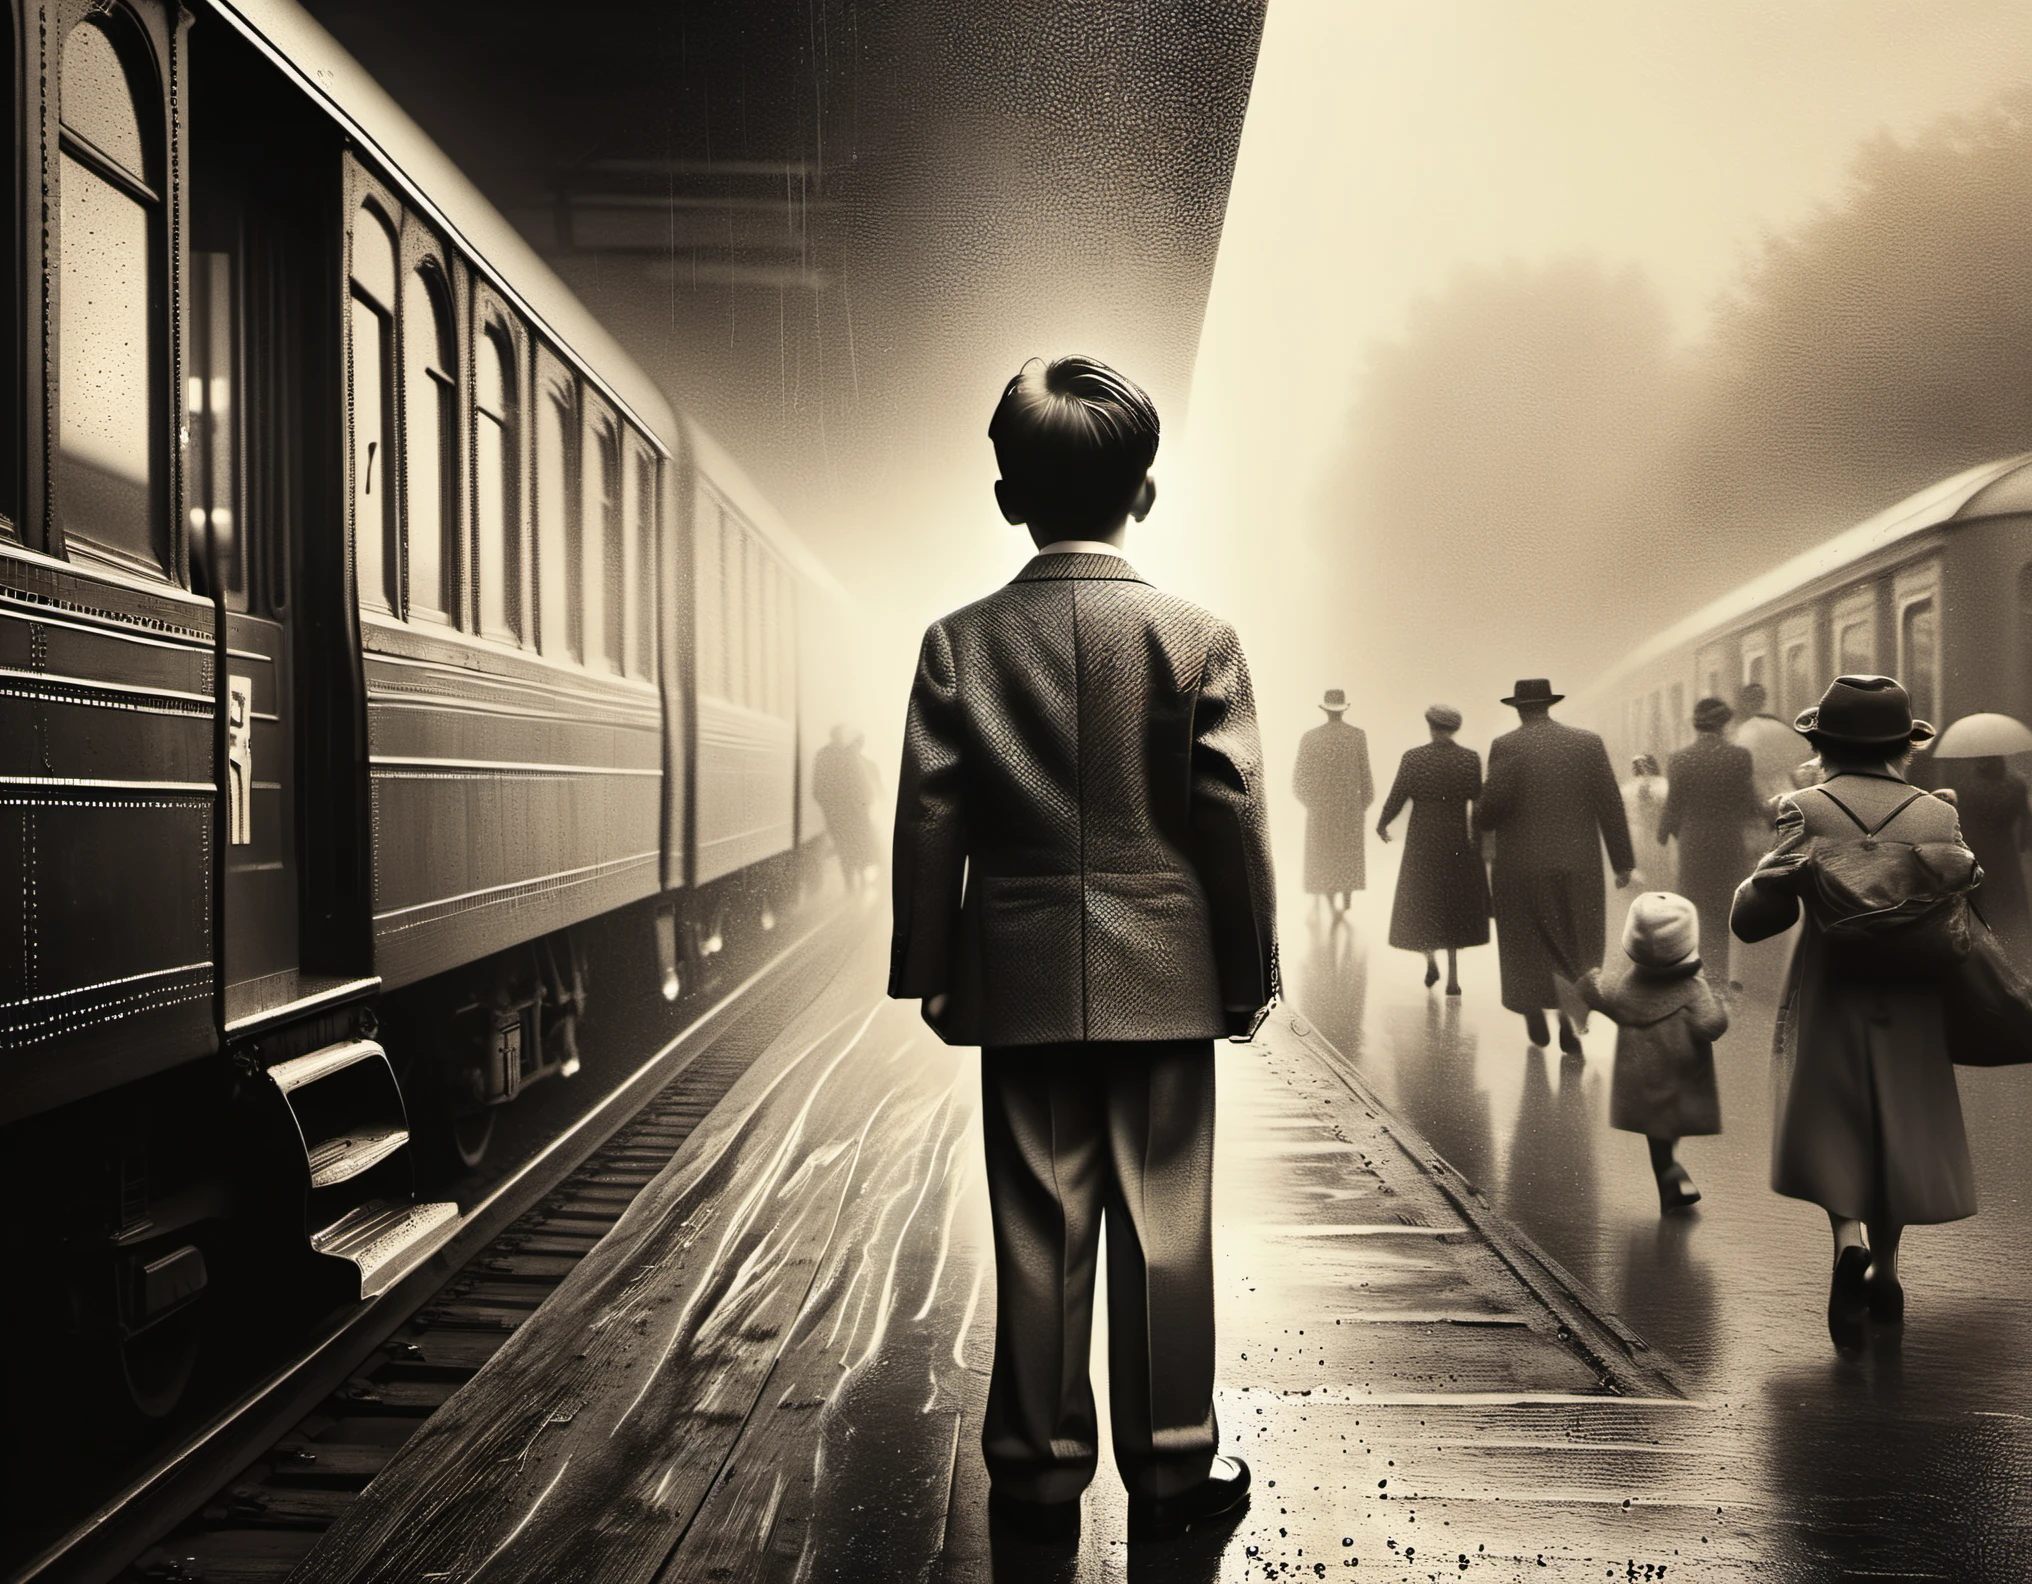 一个哭泣的男孩看着他的父亲在火车窗外挥手告别, 复古火车, 黑白照片, 肖像, 情感, 怀旧, 棕褐色调, 柔和的灯光, 父亲的背影渐渐远去, 泪流满面, 皱巴巴的西装, 火车轨道消失在远方, 人头攒动的平台, 雾蒙蒙的气氛, 窗户上大雨点, 颗粒状纹理, 悲伤的表情, 生动的记忆, 火车站, 运动模糊, 褪色的背景, 深厚的情感, 告别场景. (最好的质量,4K,8千,高分辨率,杰作:1.2),极其详细,(实际的,photo实际的,photo-实际的:1.37),HDR,超高清,工作室灯光,超精细绘画,清晰聚焦,基于物理的渲染,极其详细的描述,专业的,鲜艳的颜色,散景, 肖像s, 古板美学.